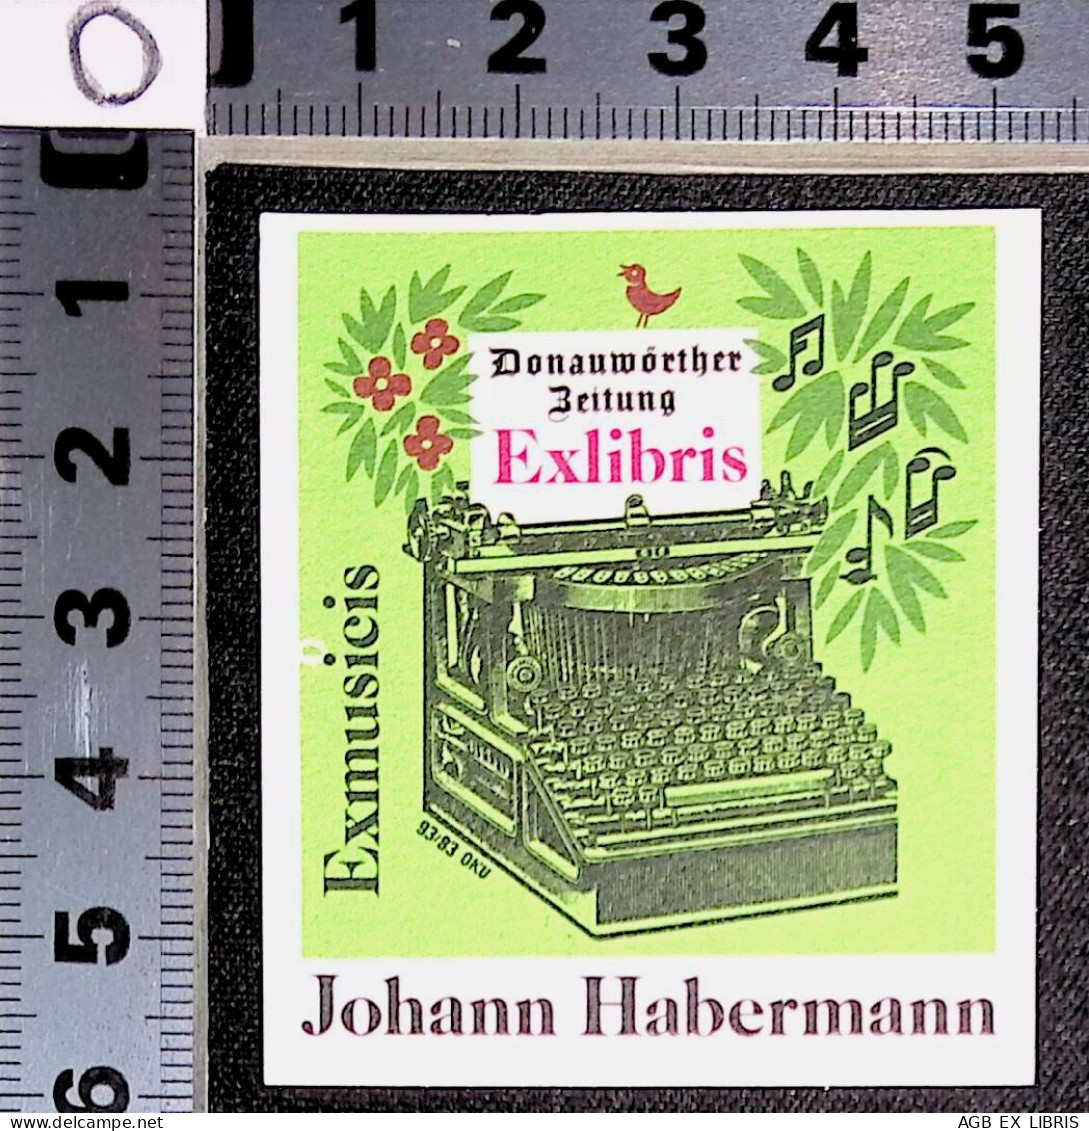 EX LIBRIS OTTO KUCHENBAUER Per JOHANN HABERMANN 93/83 L27bis-F01 DONAUWORTHER BEITUNG EX MUSICIS - Exlibris